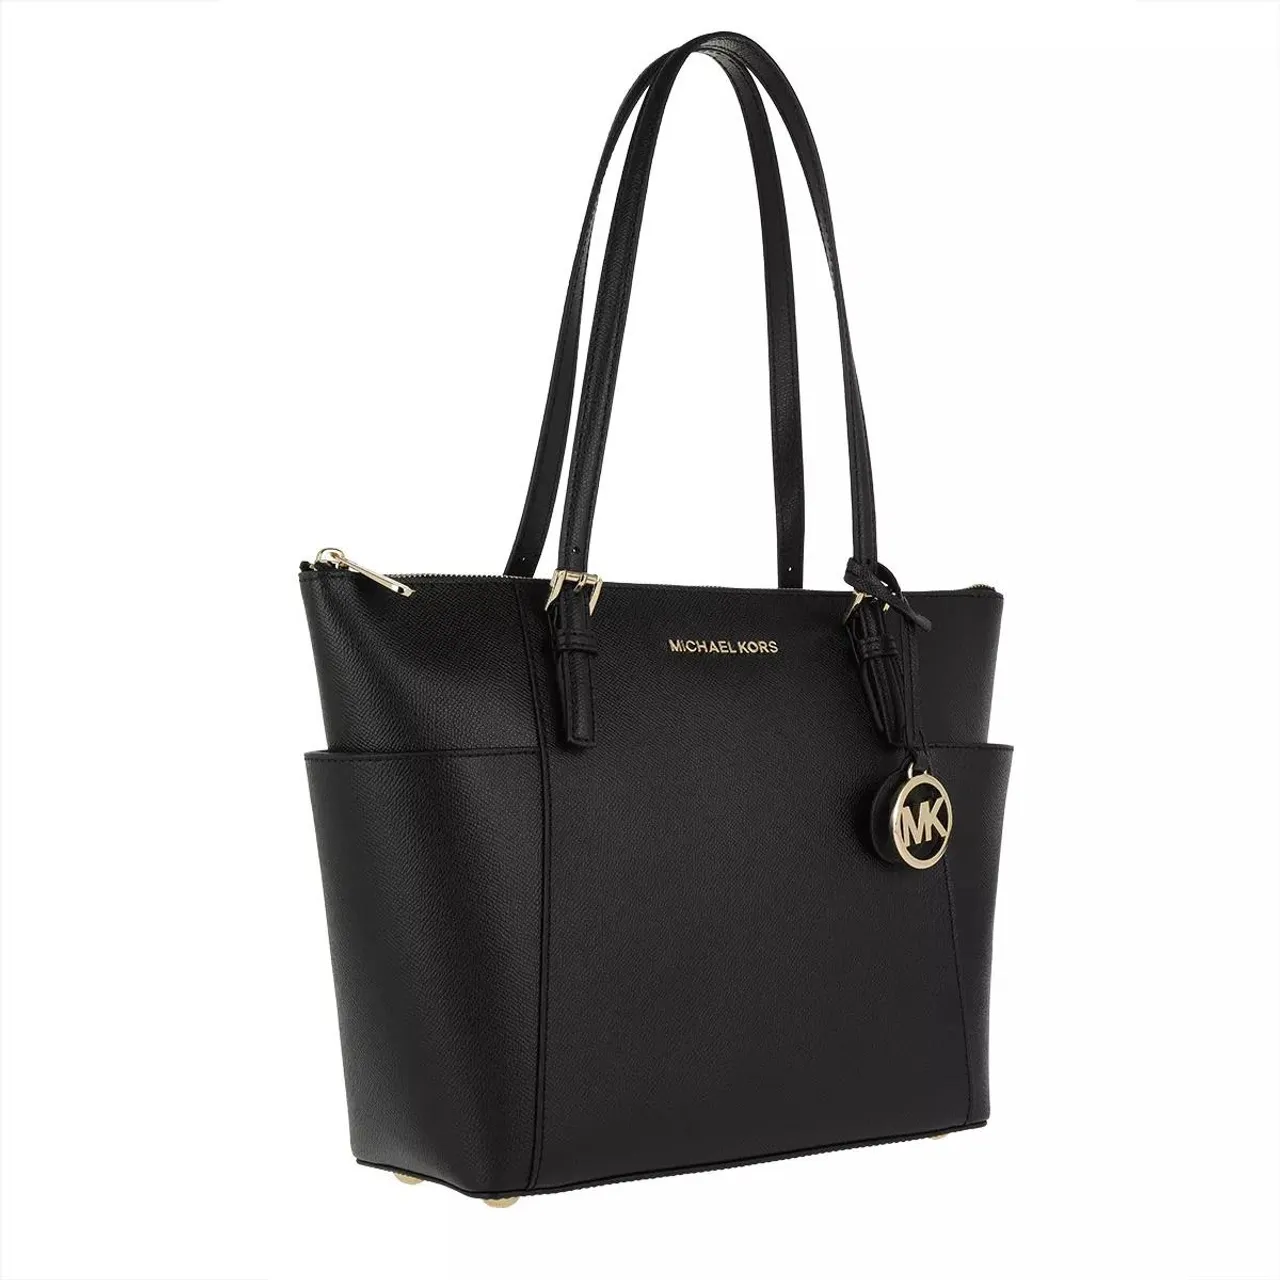 Michael Kors Tote Bags - Jet Set Item Tote Bag - black - Tote Bags for ladies